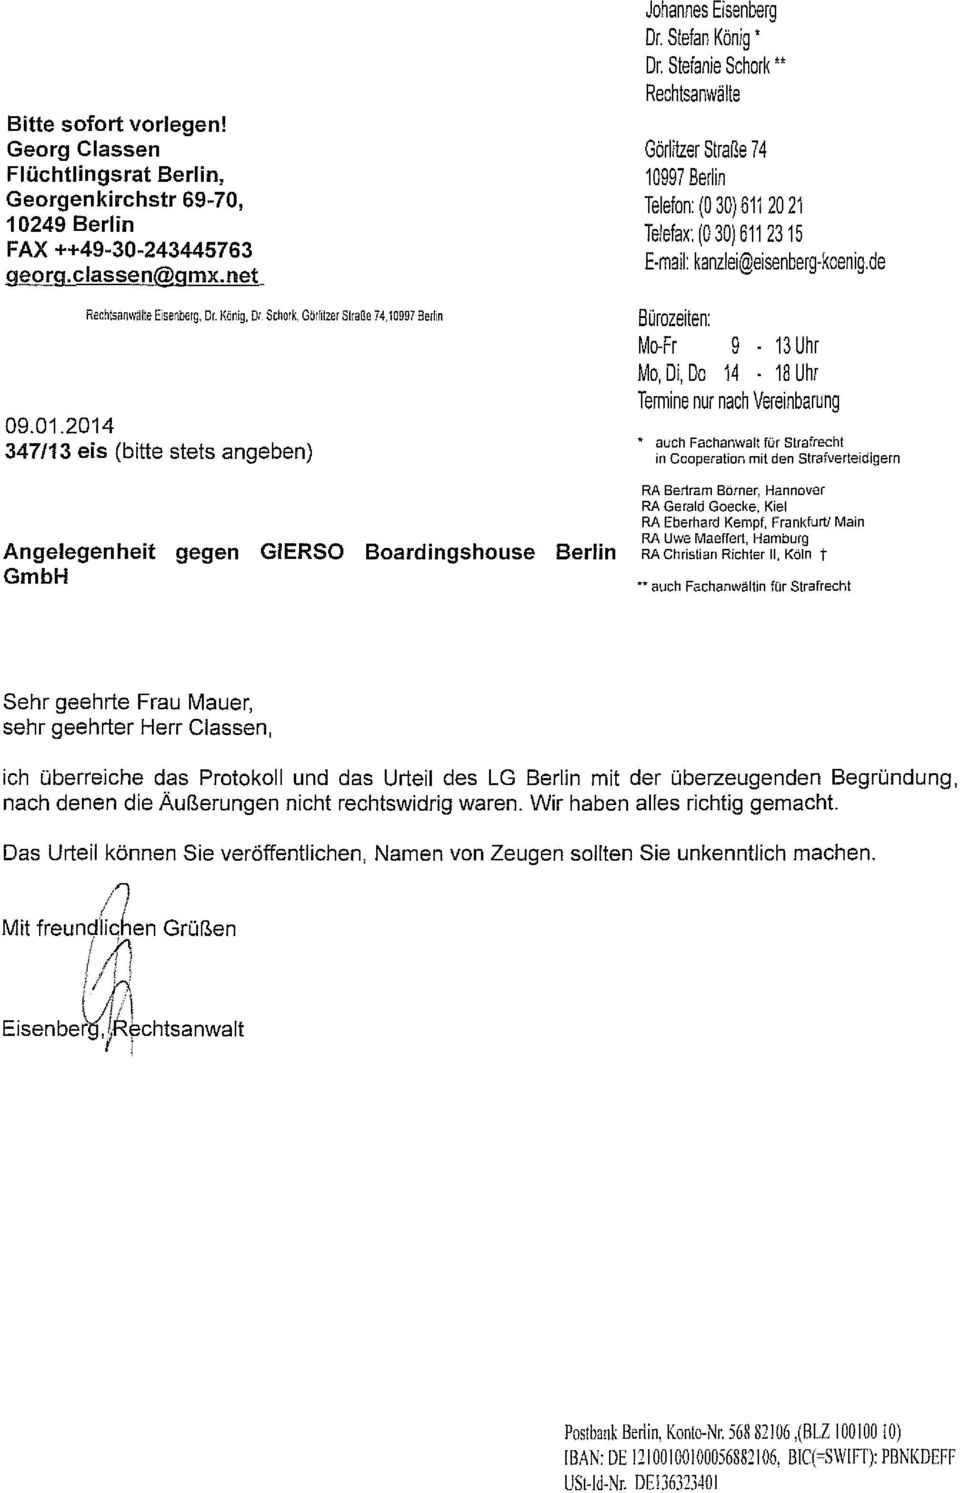 . Rechtsanwälte Görltzer Straße 74 10997 Berln Telefon (030) 611 2021 Telefax: (0 30) 6112315 E mal: kanzle@esenberg koeng.